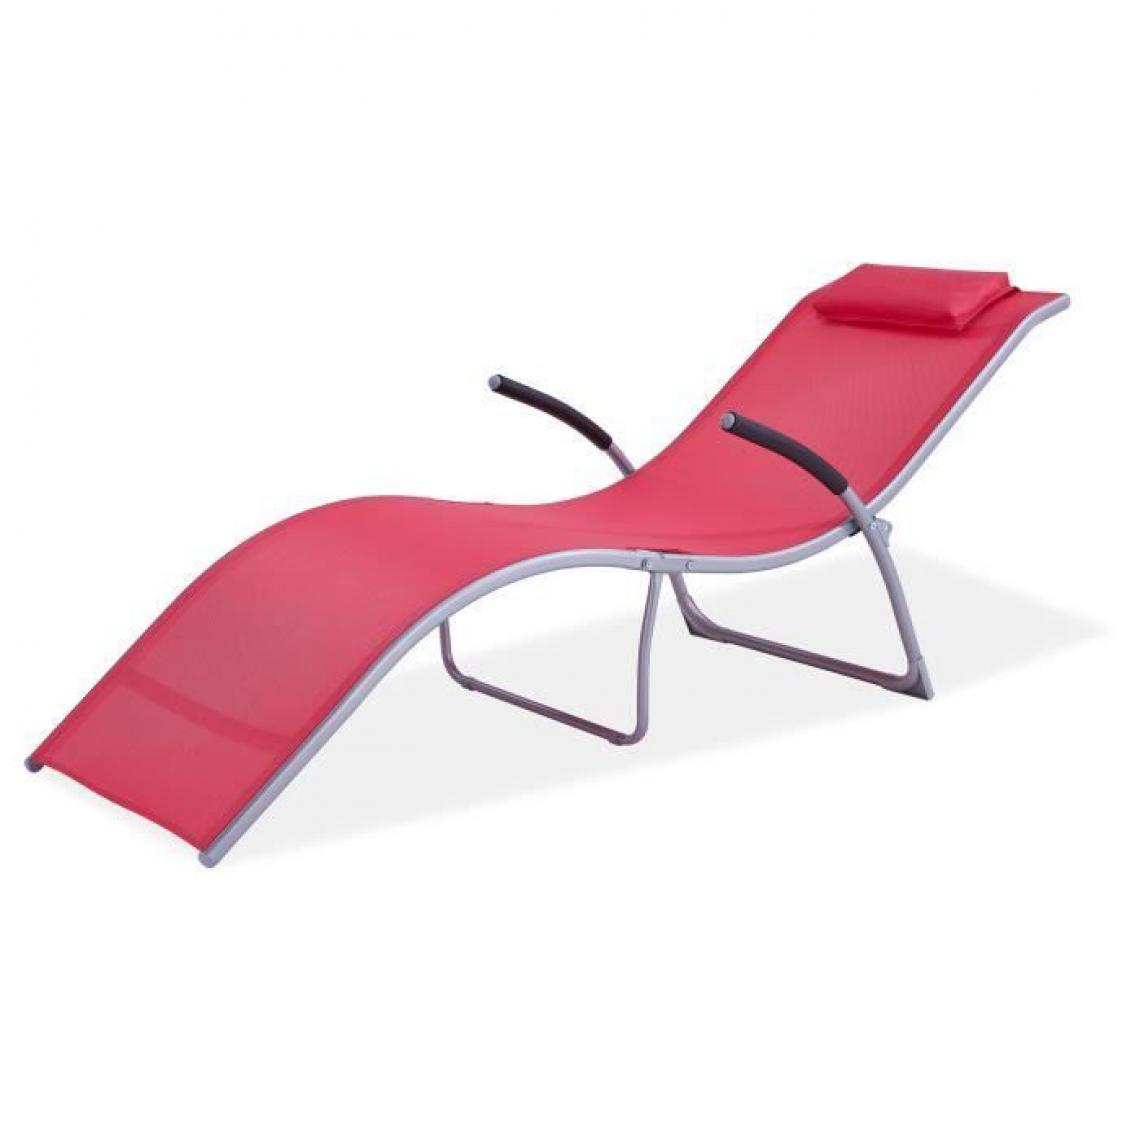 marque generique - TREVI Bain de soleil retractable - Corail - Transats, chaises longues